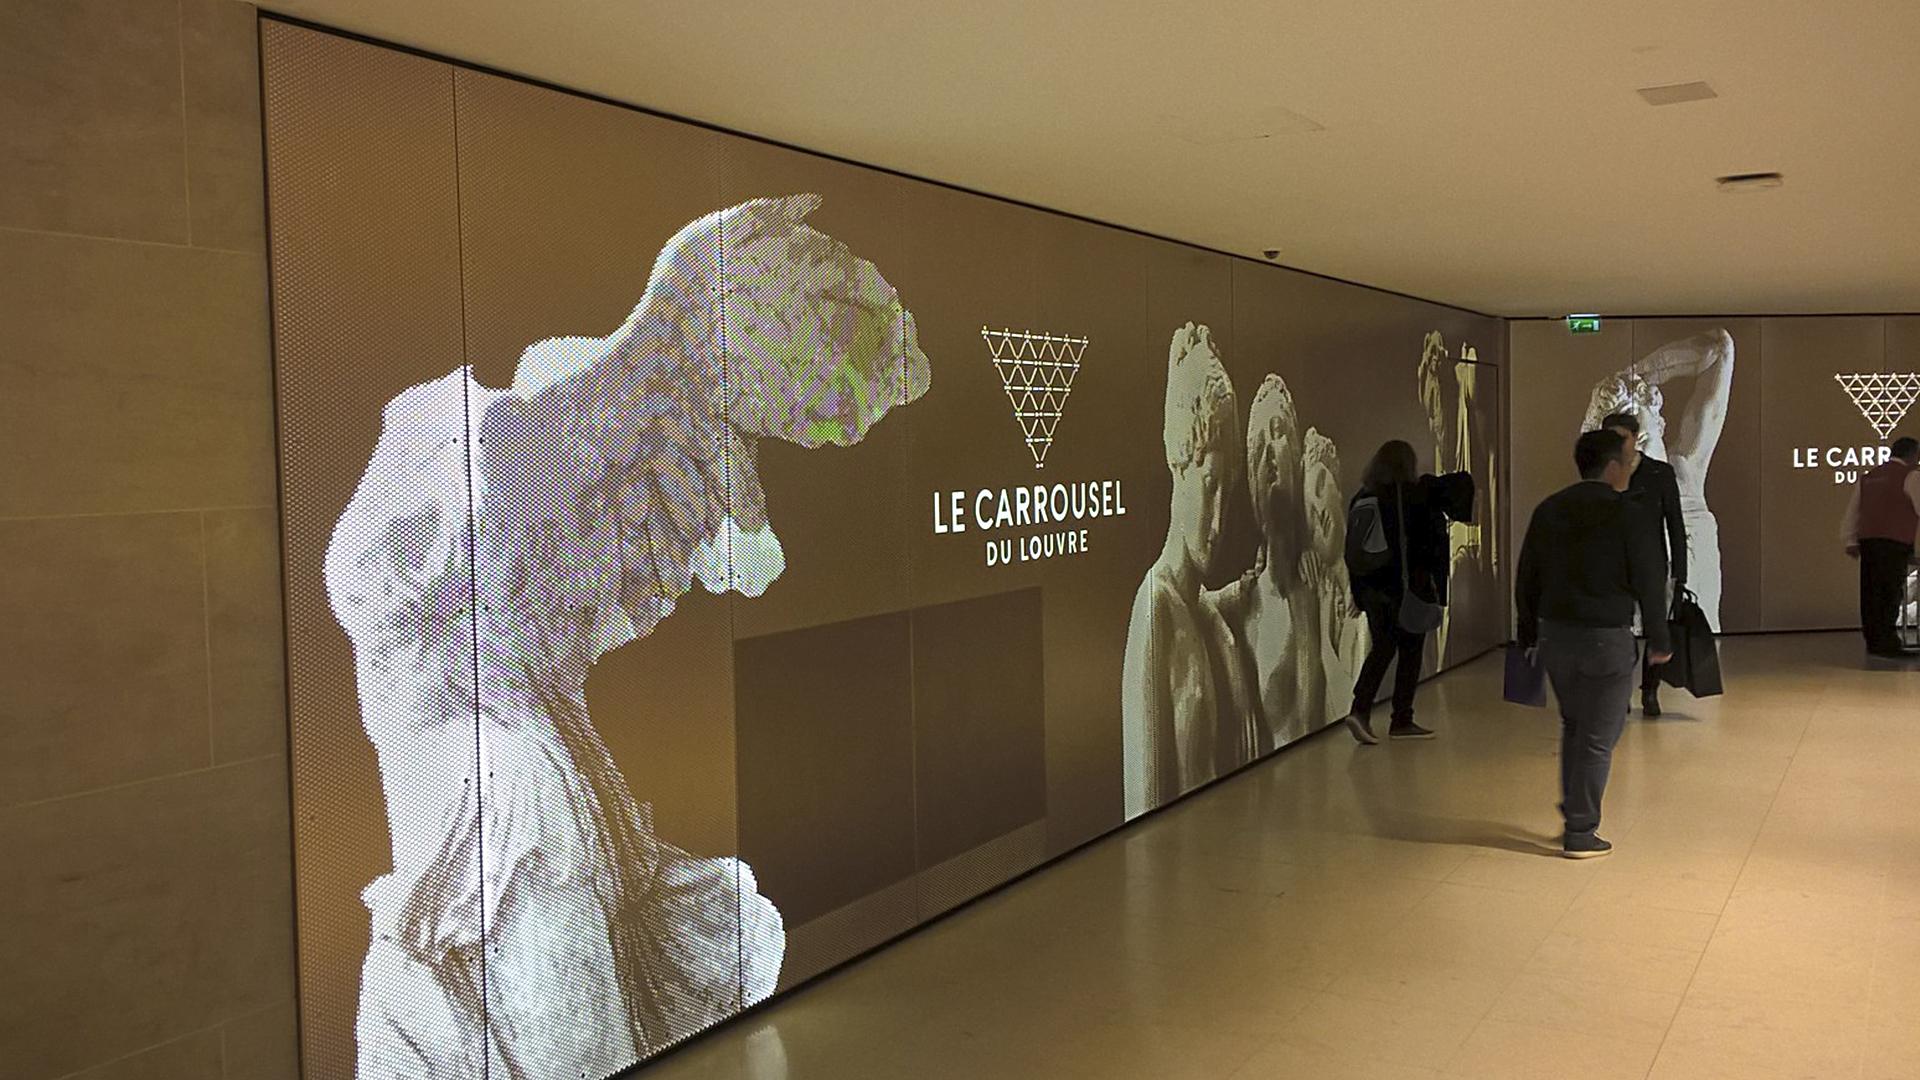 Wielkoformatowe rozwiązanie oświetleniowe na zamówienie dla Carrousel de Louvre Paris opracowane przez Visotec